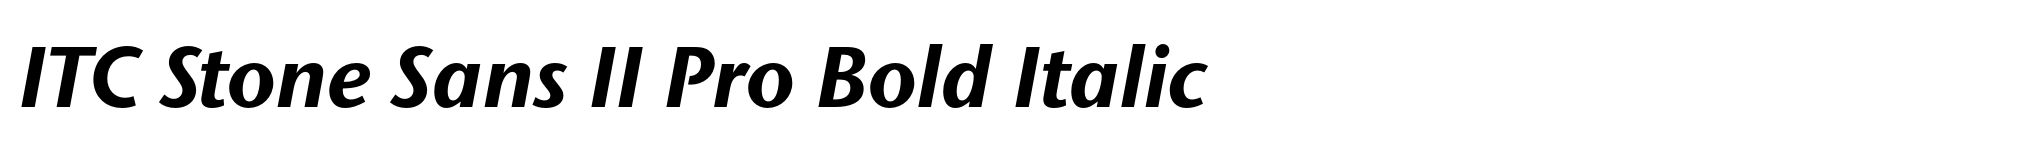 ITC Stone Sans II Pro Bold Italic image